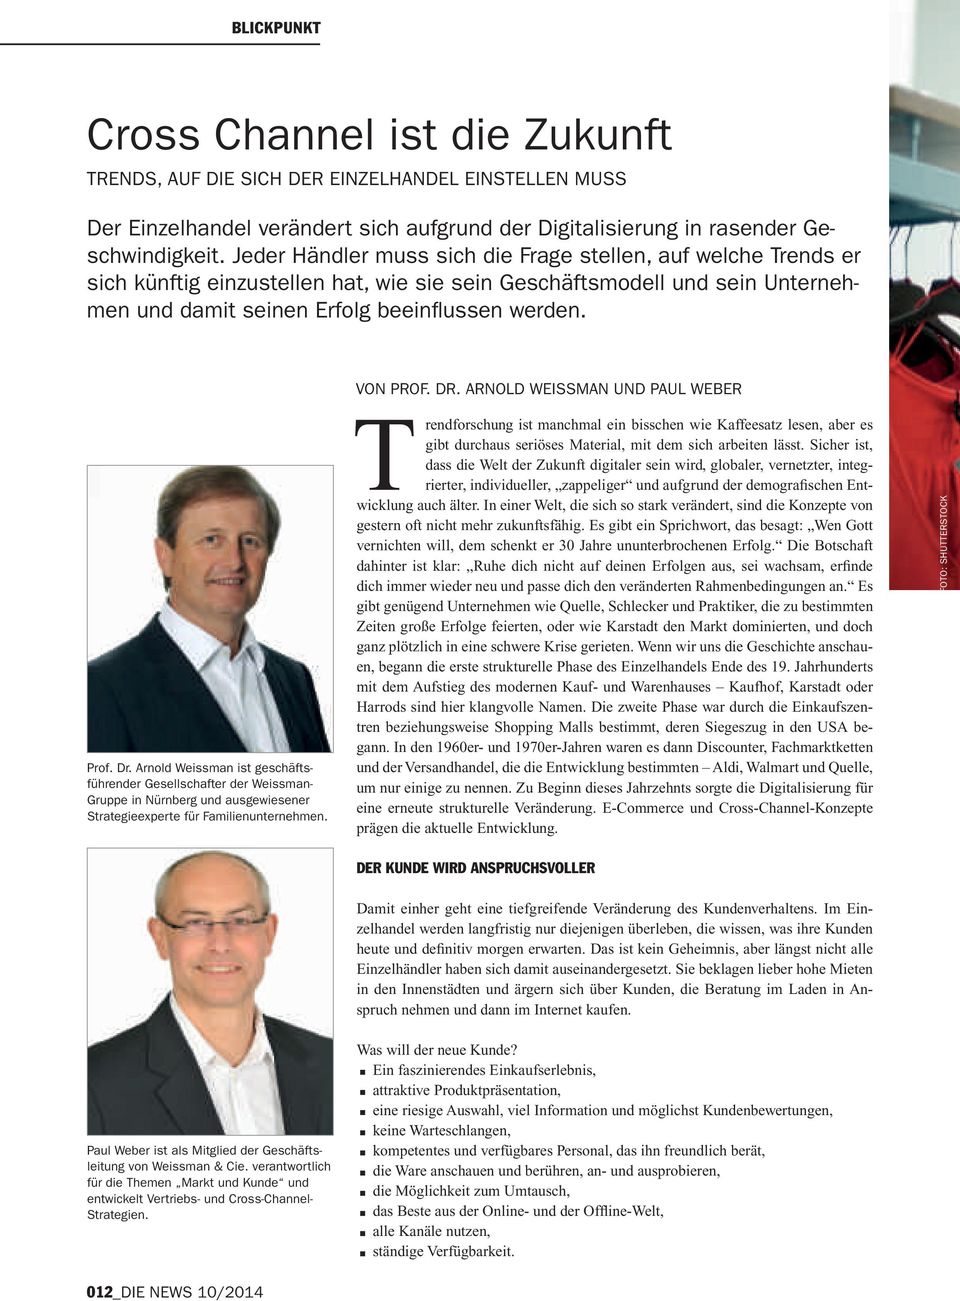 Dr. Arnold Weissman und Paul Weber Prof. Dr. Arnold Weissman ist geschäftsführender Gesellschafter der Weissman- Gruppe in Nürnberg und ausgewiesener Strategieexperte für Familienunternehmen.